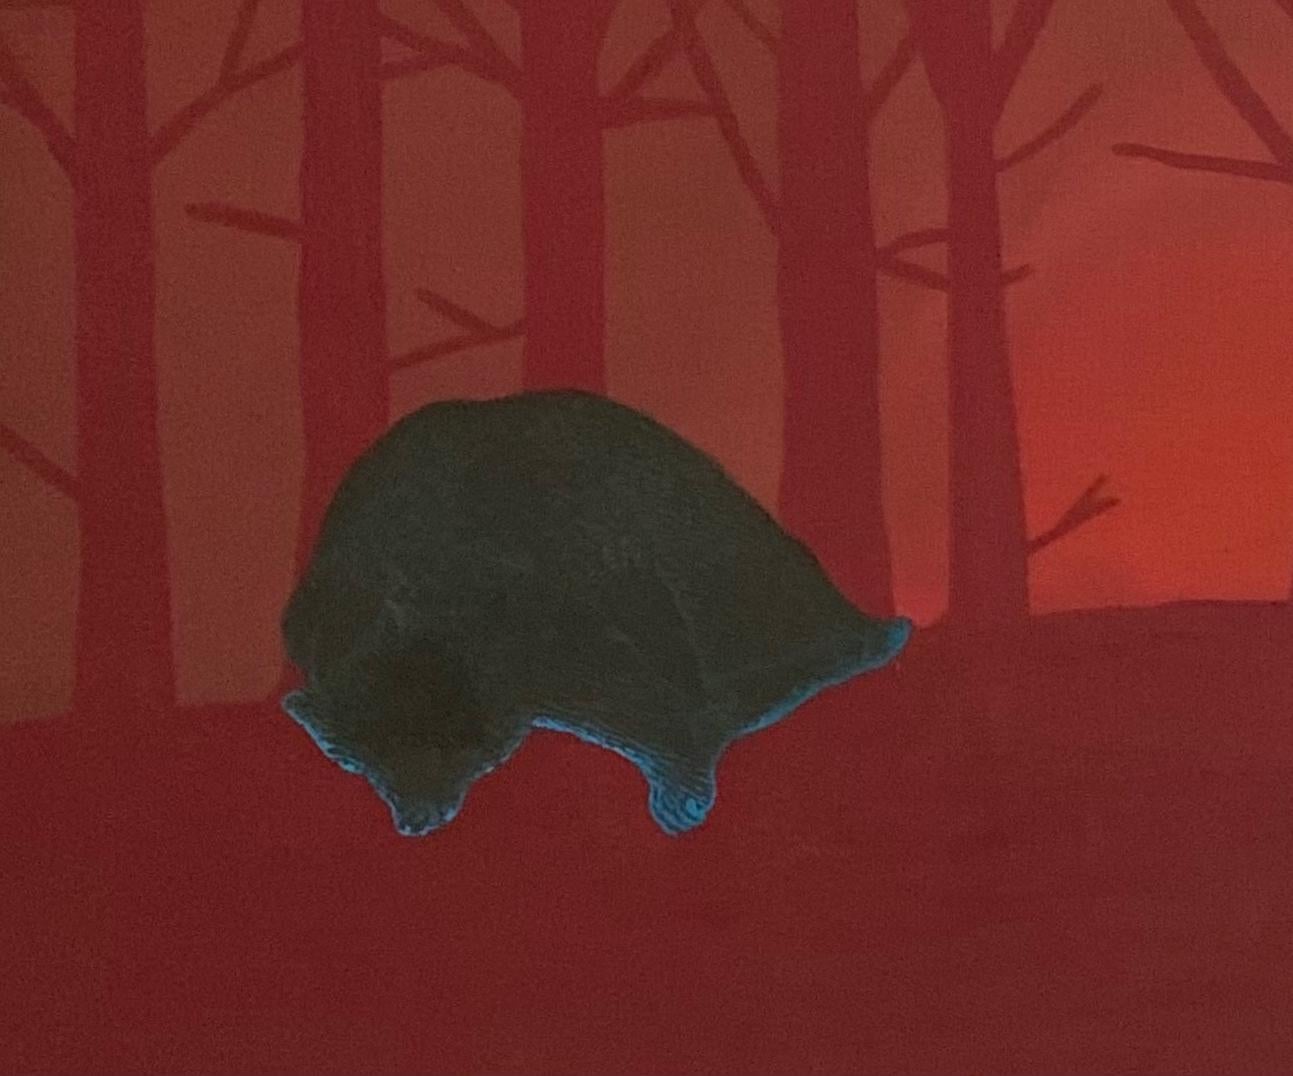 Morning Hour (ours endormi) - Peinture à l'huile - Animaux figuratifs, réalisme magique - Painting de Aleksandra Bujnowska